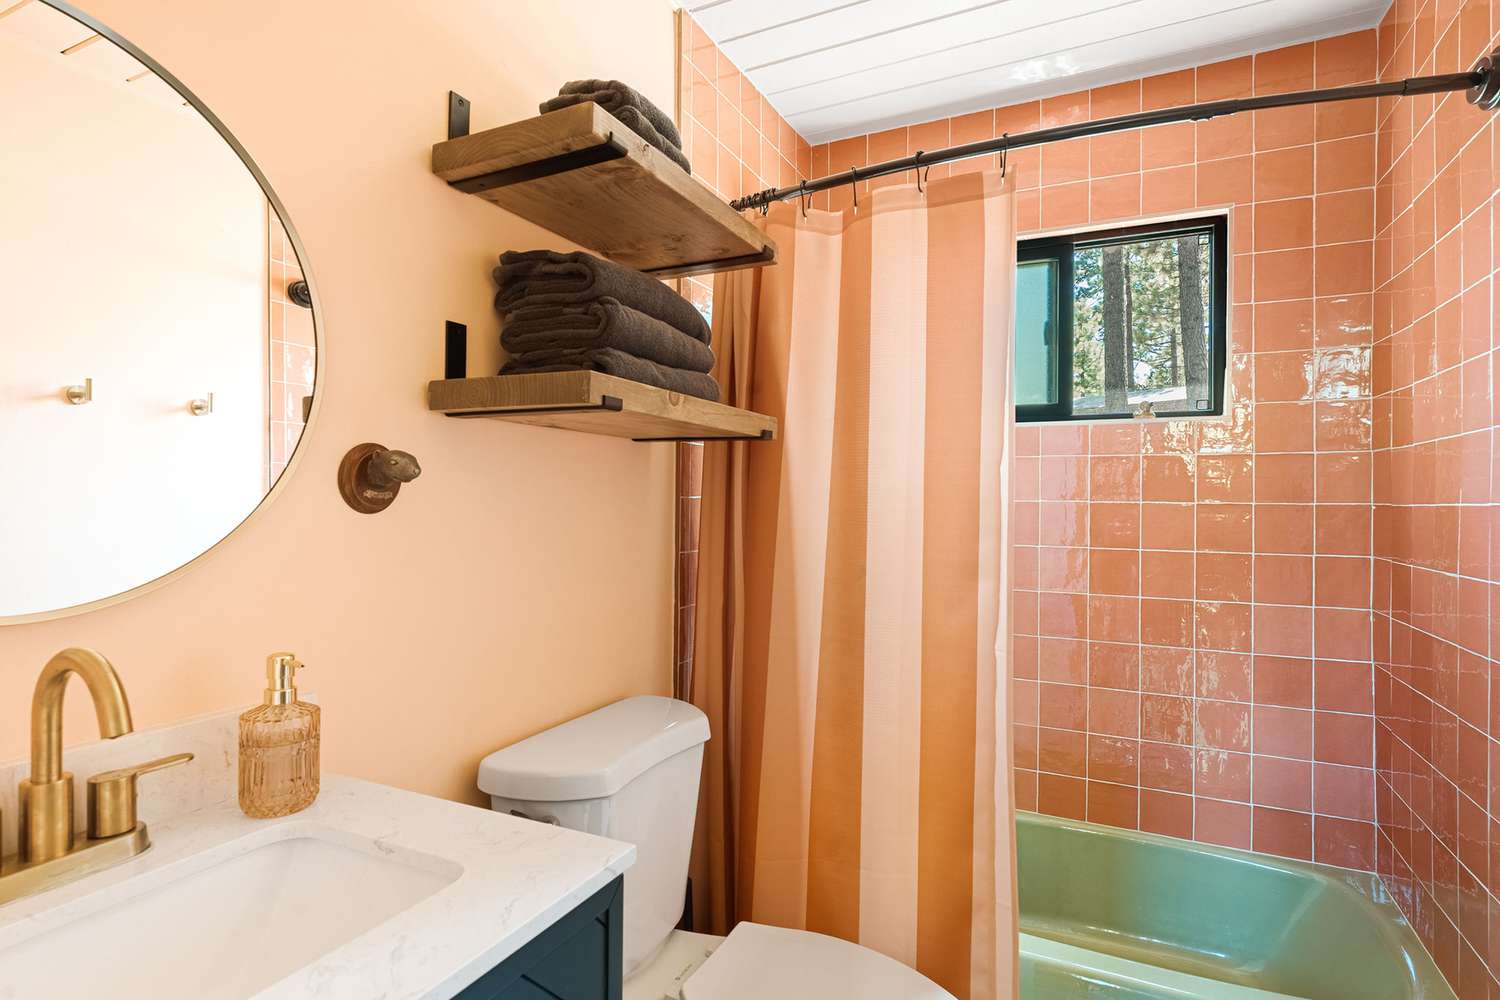 Banheiro rosa e verde de inspiração vintage